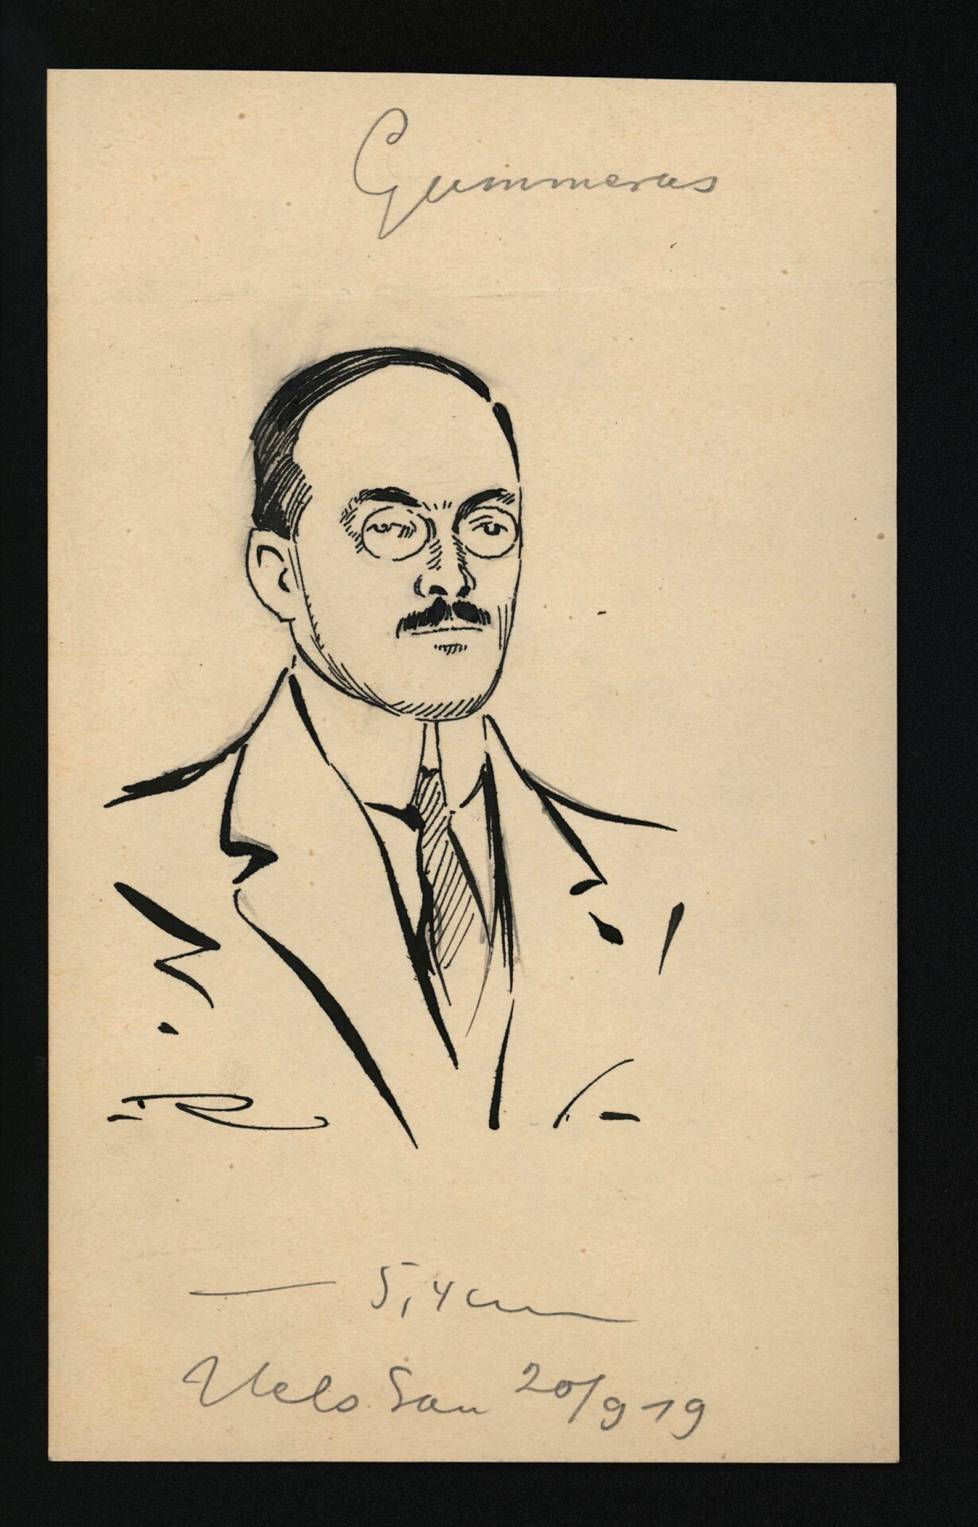 Herman Gummerus vuonna 1919. Piirros on Päivälehden arkistosta, ja se on Helsingin Sanomain uutispiirtäjän Rafael Rindellin käsialaa.